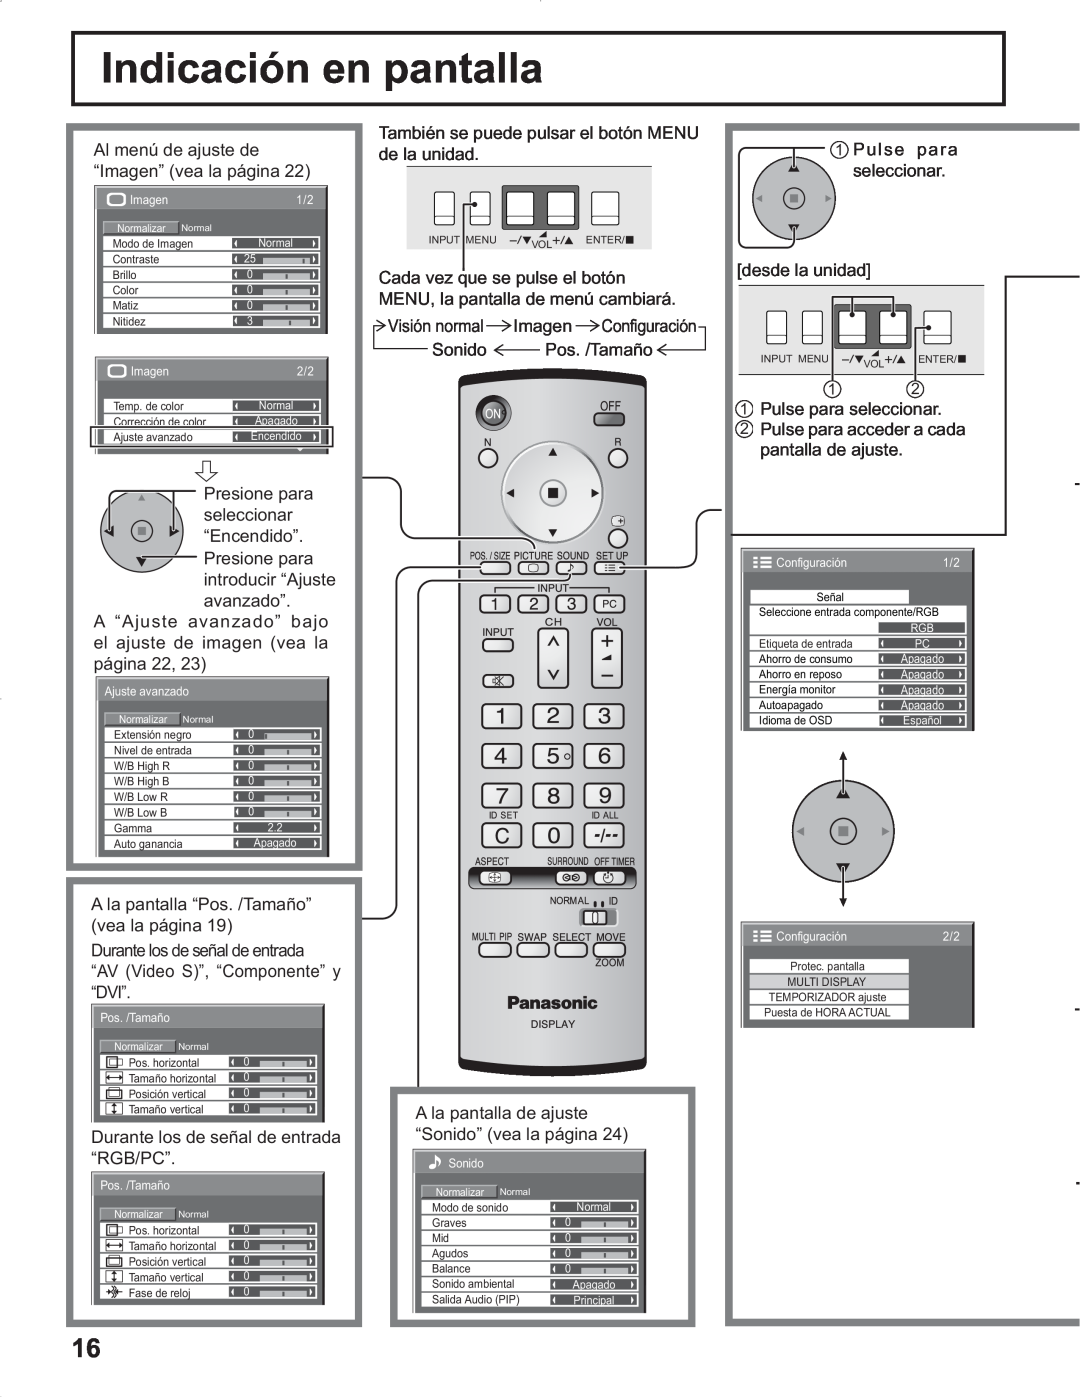 Panasonic TH-37PR9U, TH-37PG9U, TH-42PG9U, TH-42PR9U manual Indicación en pantalla, Señal Seleccione entrada componente/RGB 